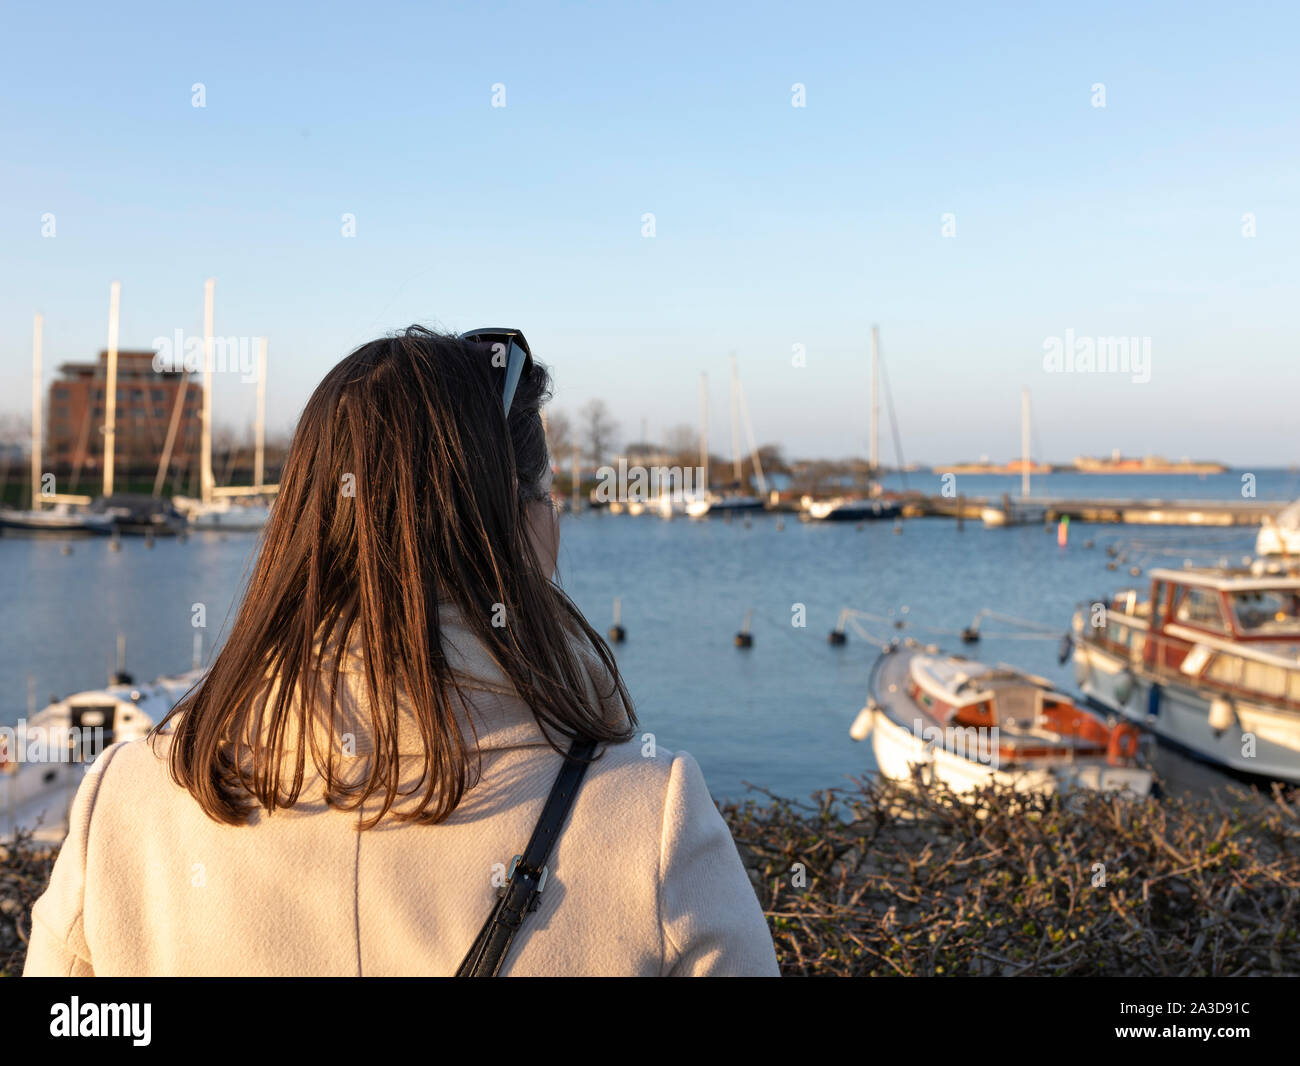 Schicke Frau schaut in einen Hafen mit Booten während eines Sonnenuntergangs Stock Photo